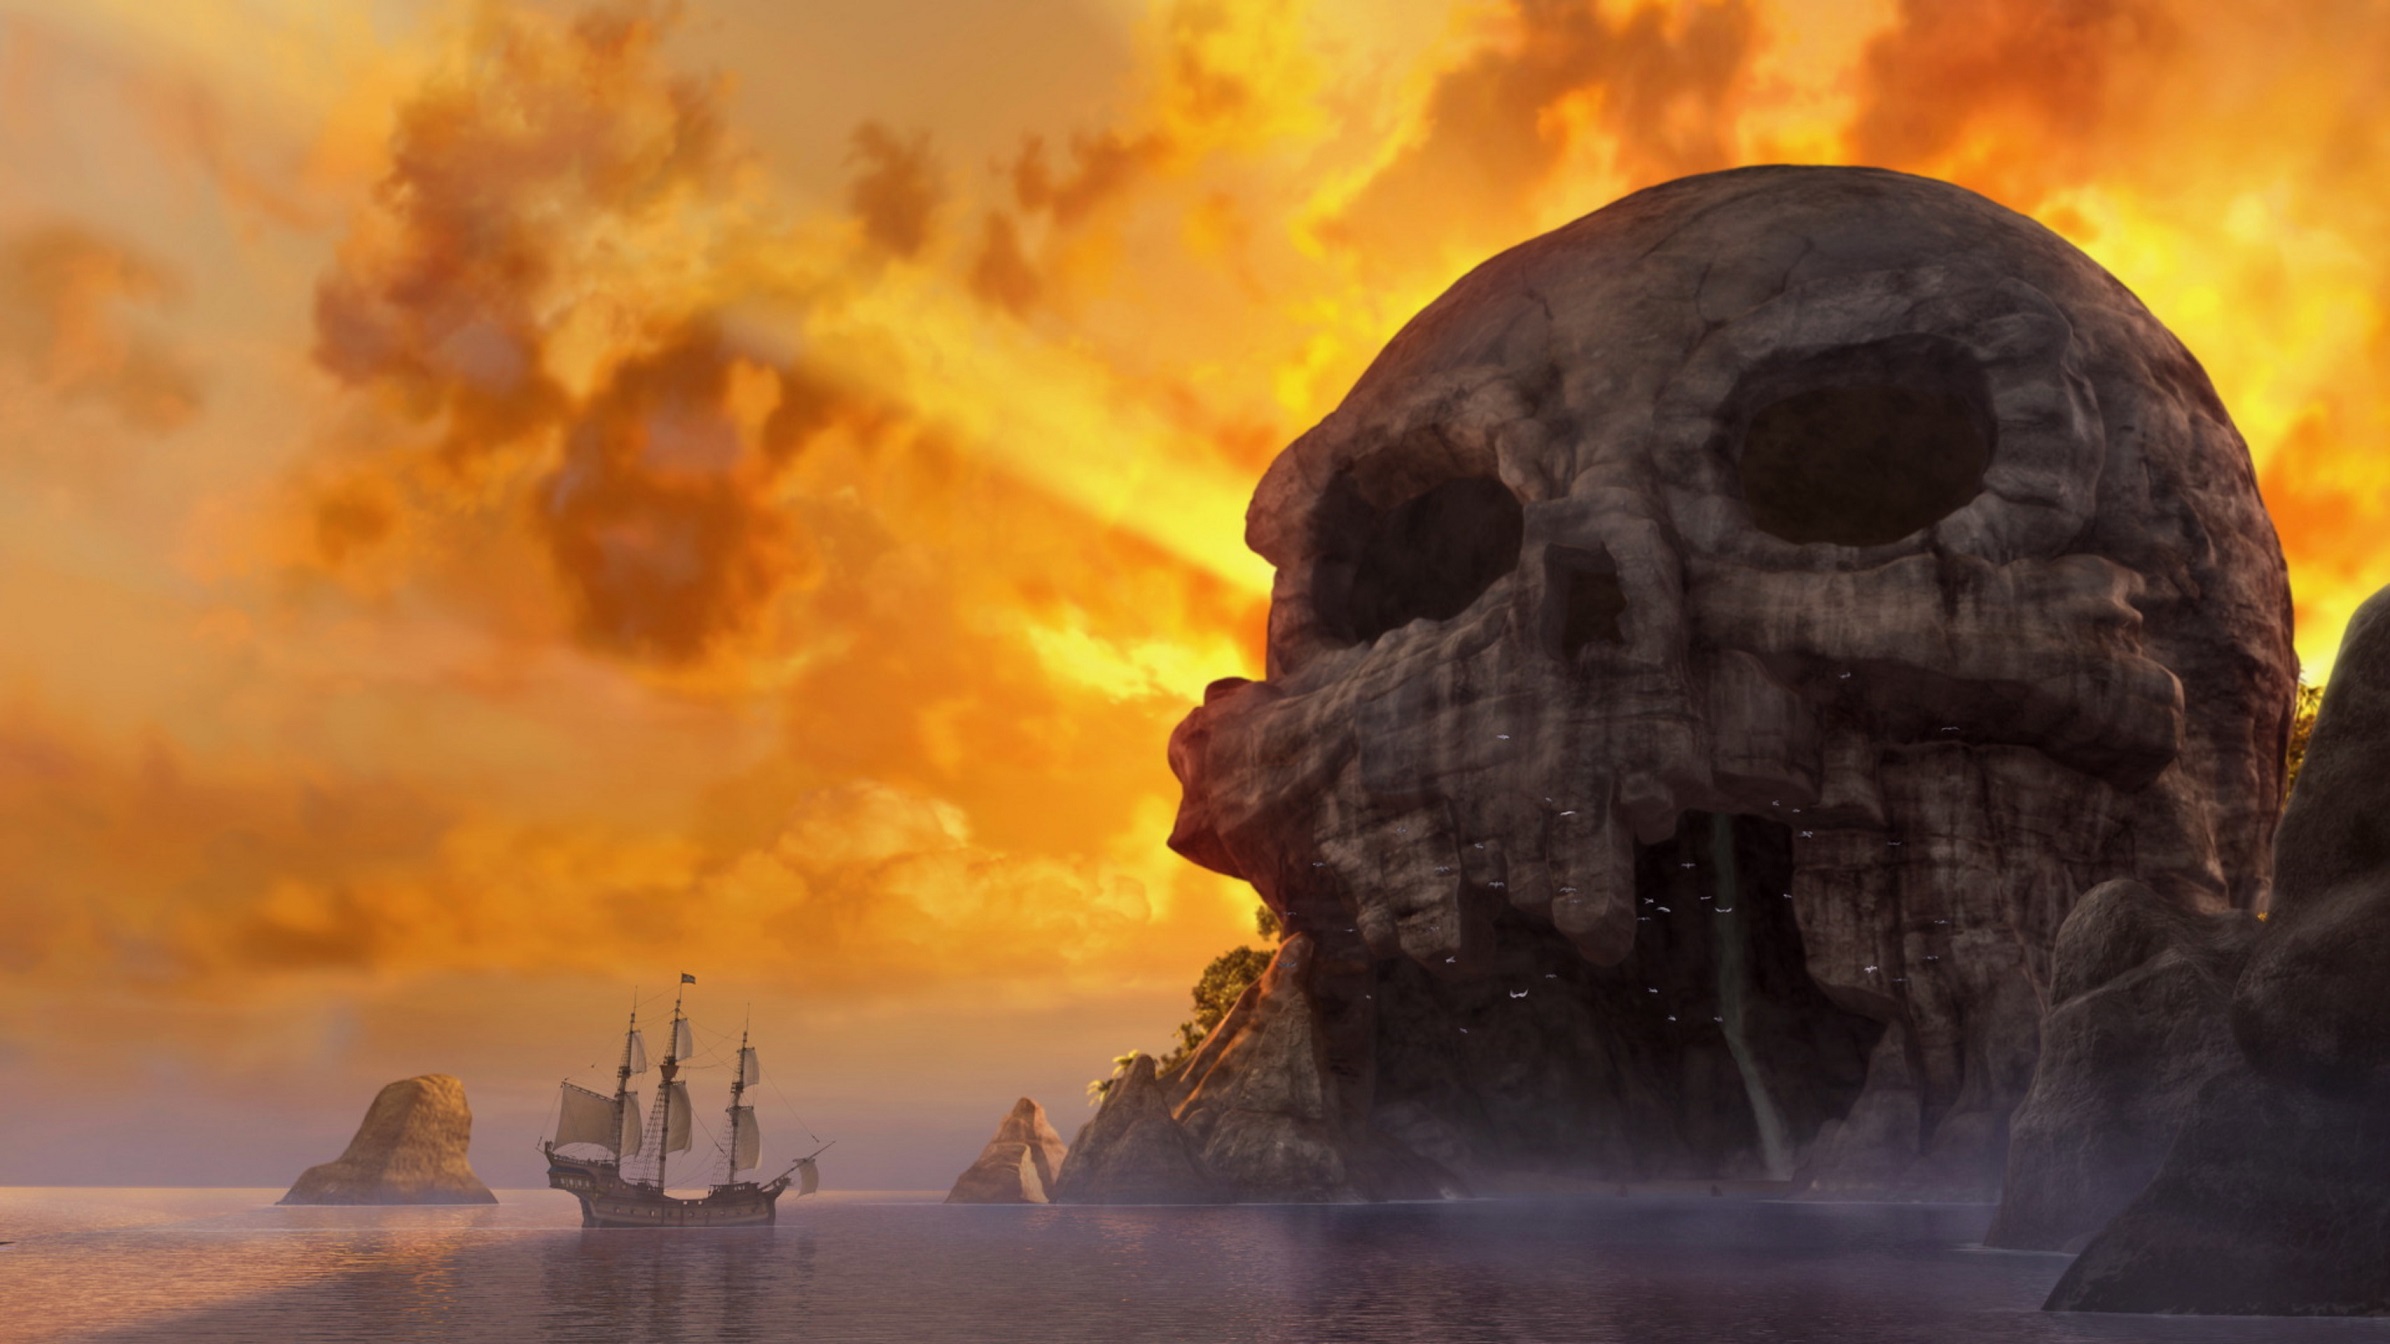 Скачать обои Феи: Загадка Пиратского Острова на телефон бесплатно